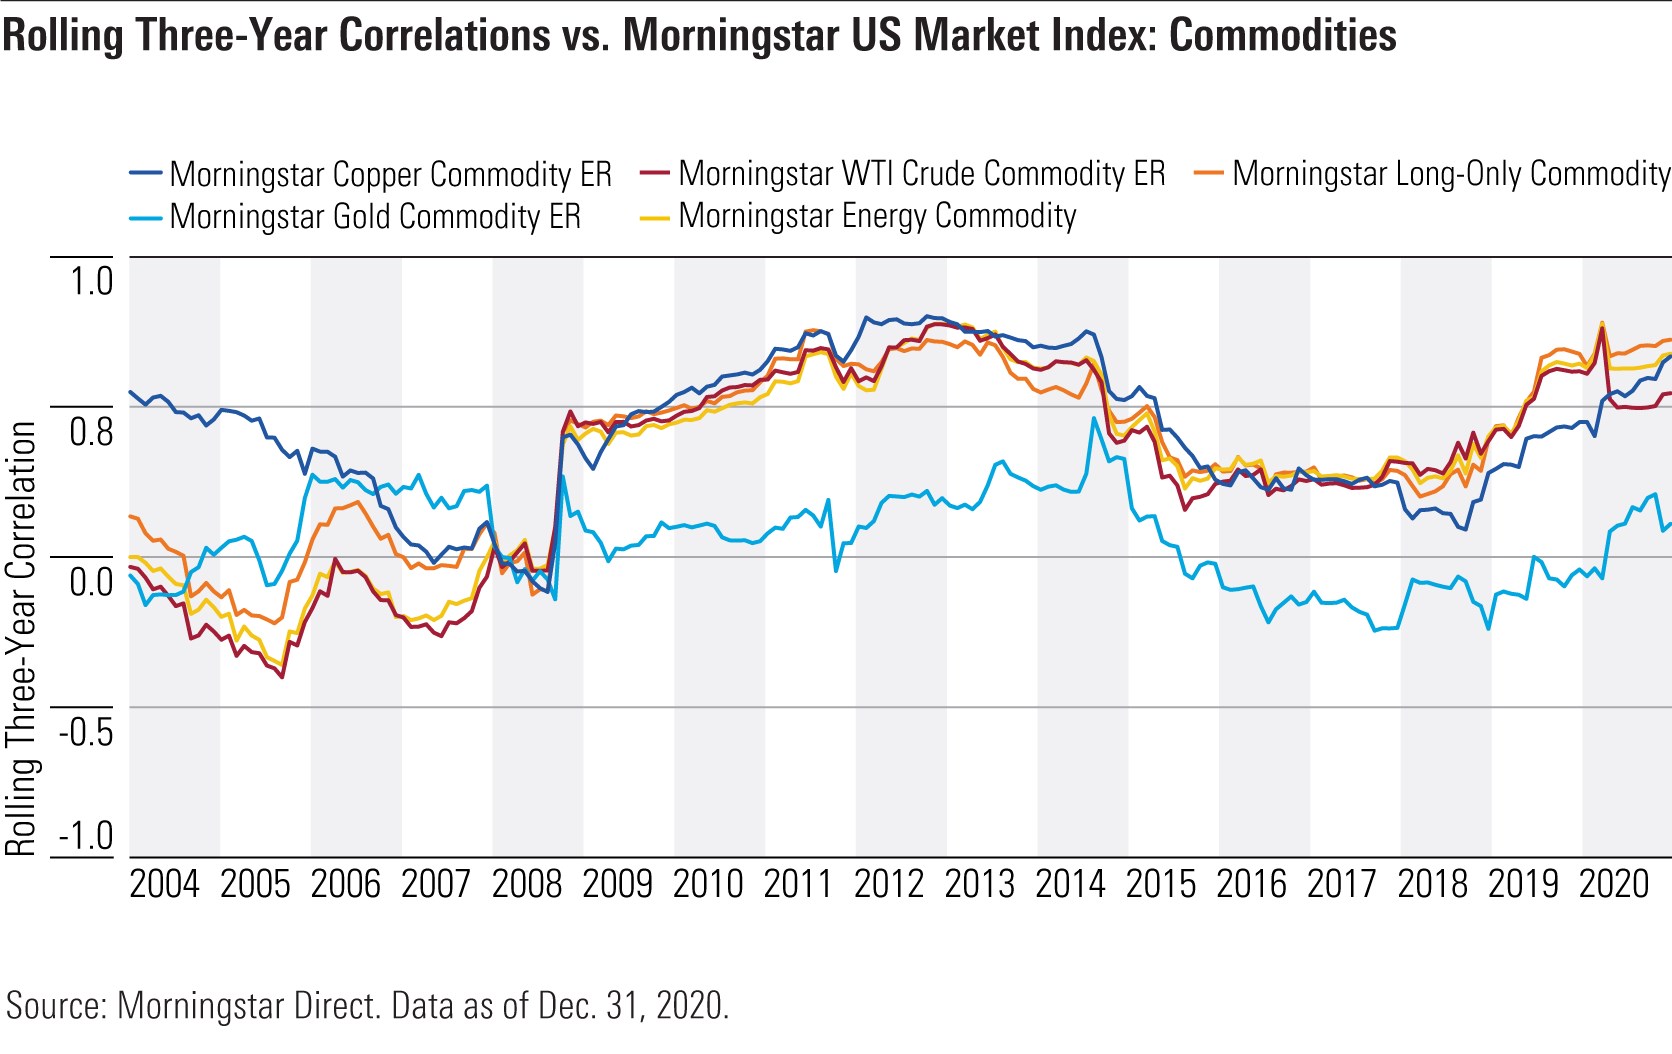 Commodities correlation matrix